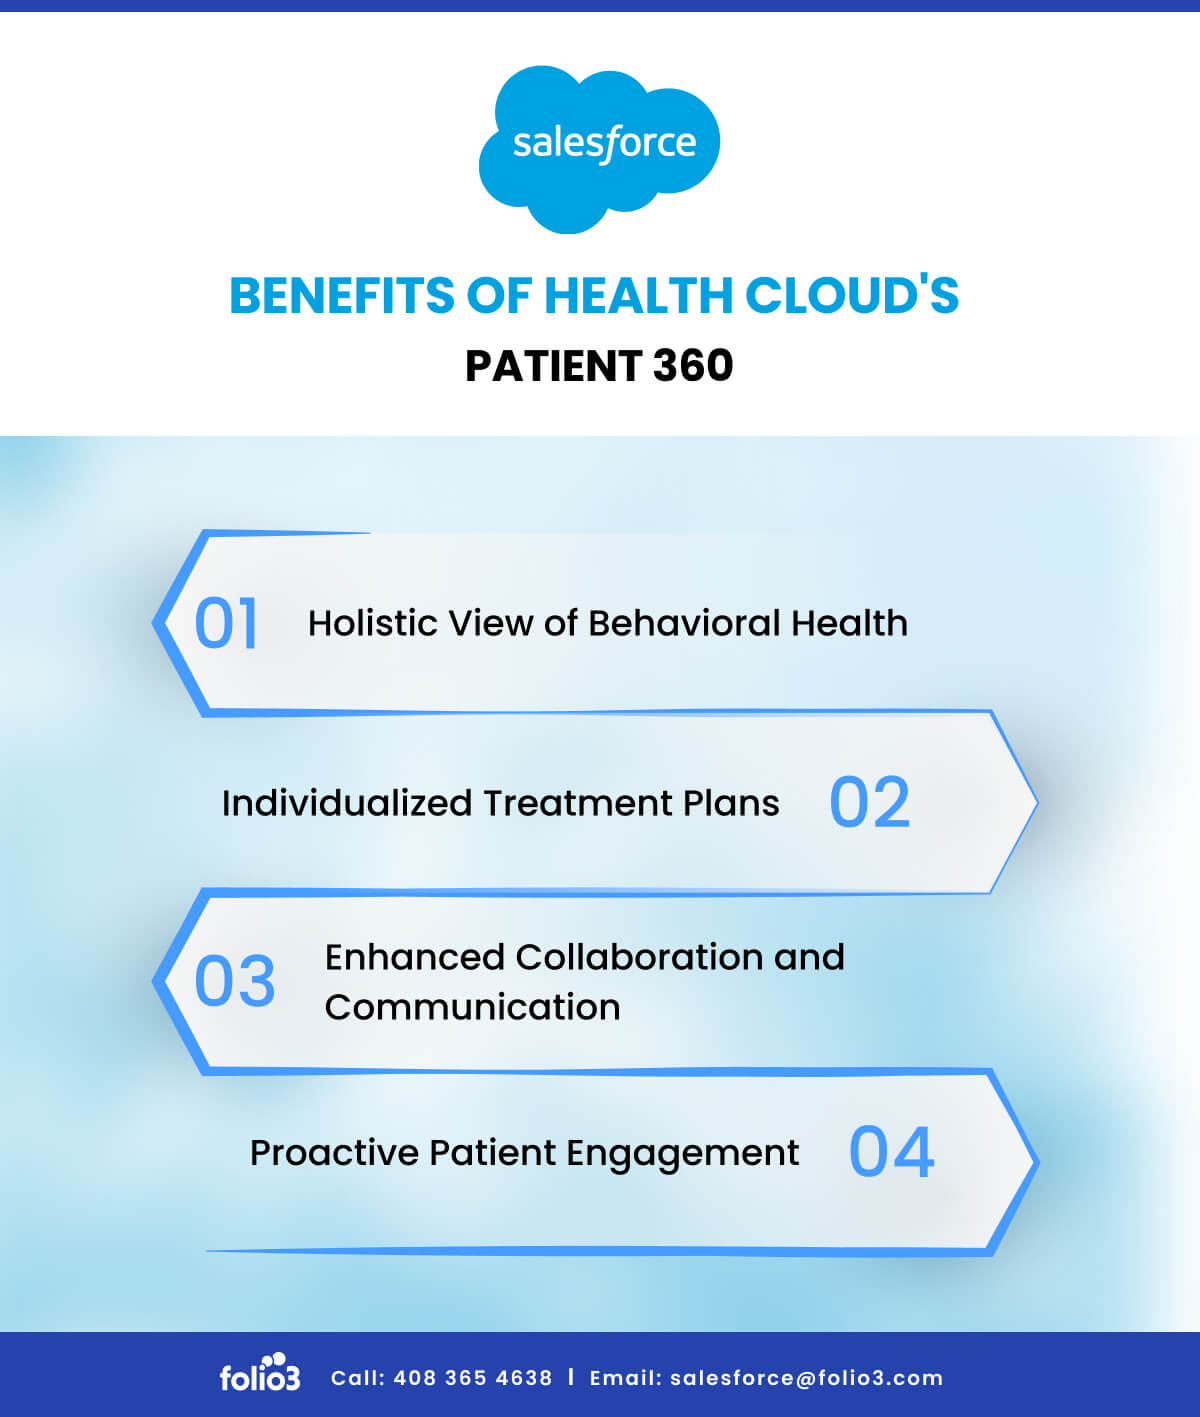 Benefits of Health Cloud’s Patient 360